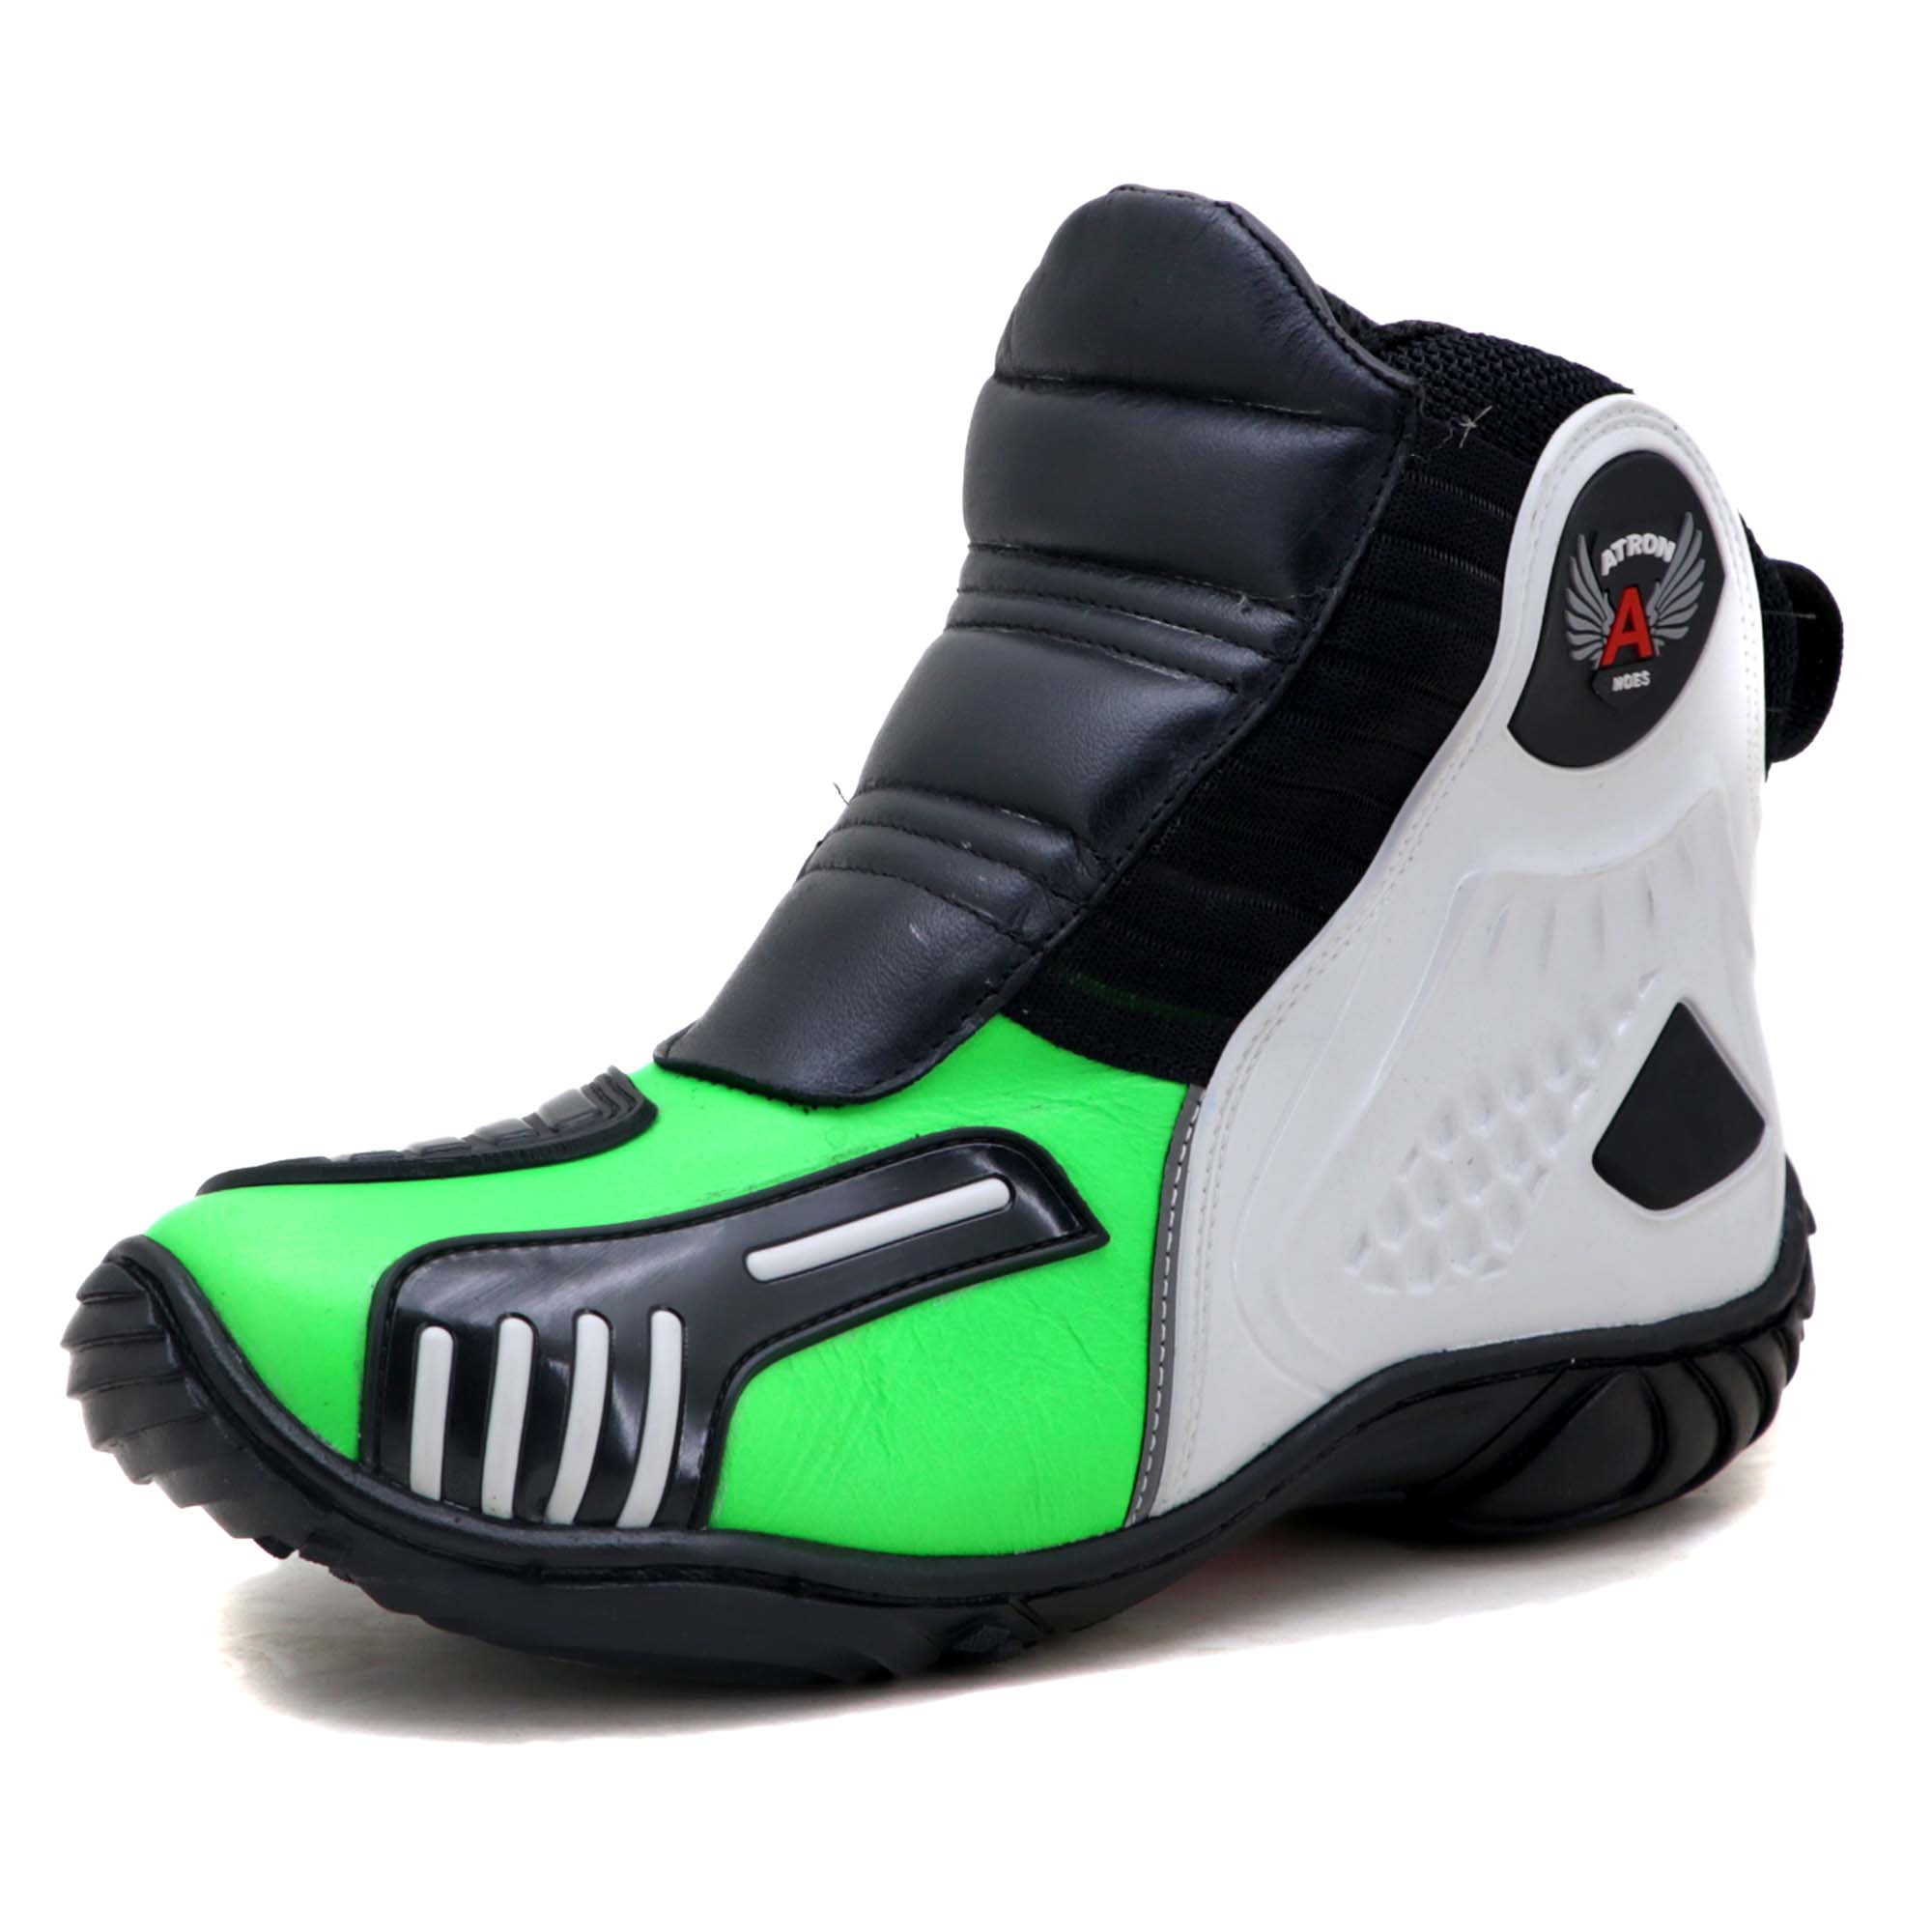 Bota motociclista Atron Shoes AS-HIGHWAY em couro legítimo semi-impermeável emborrachada Com elástico na cor Verde Limão 408